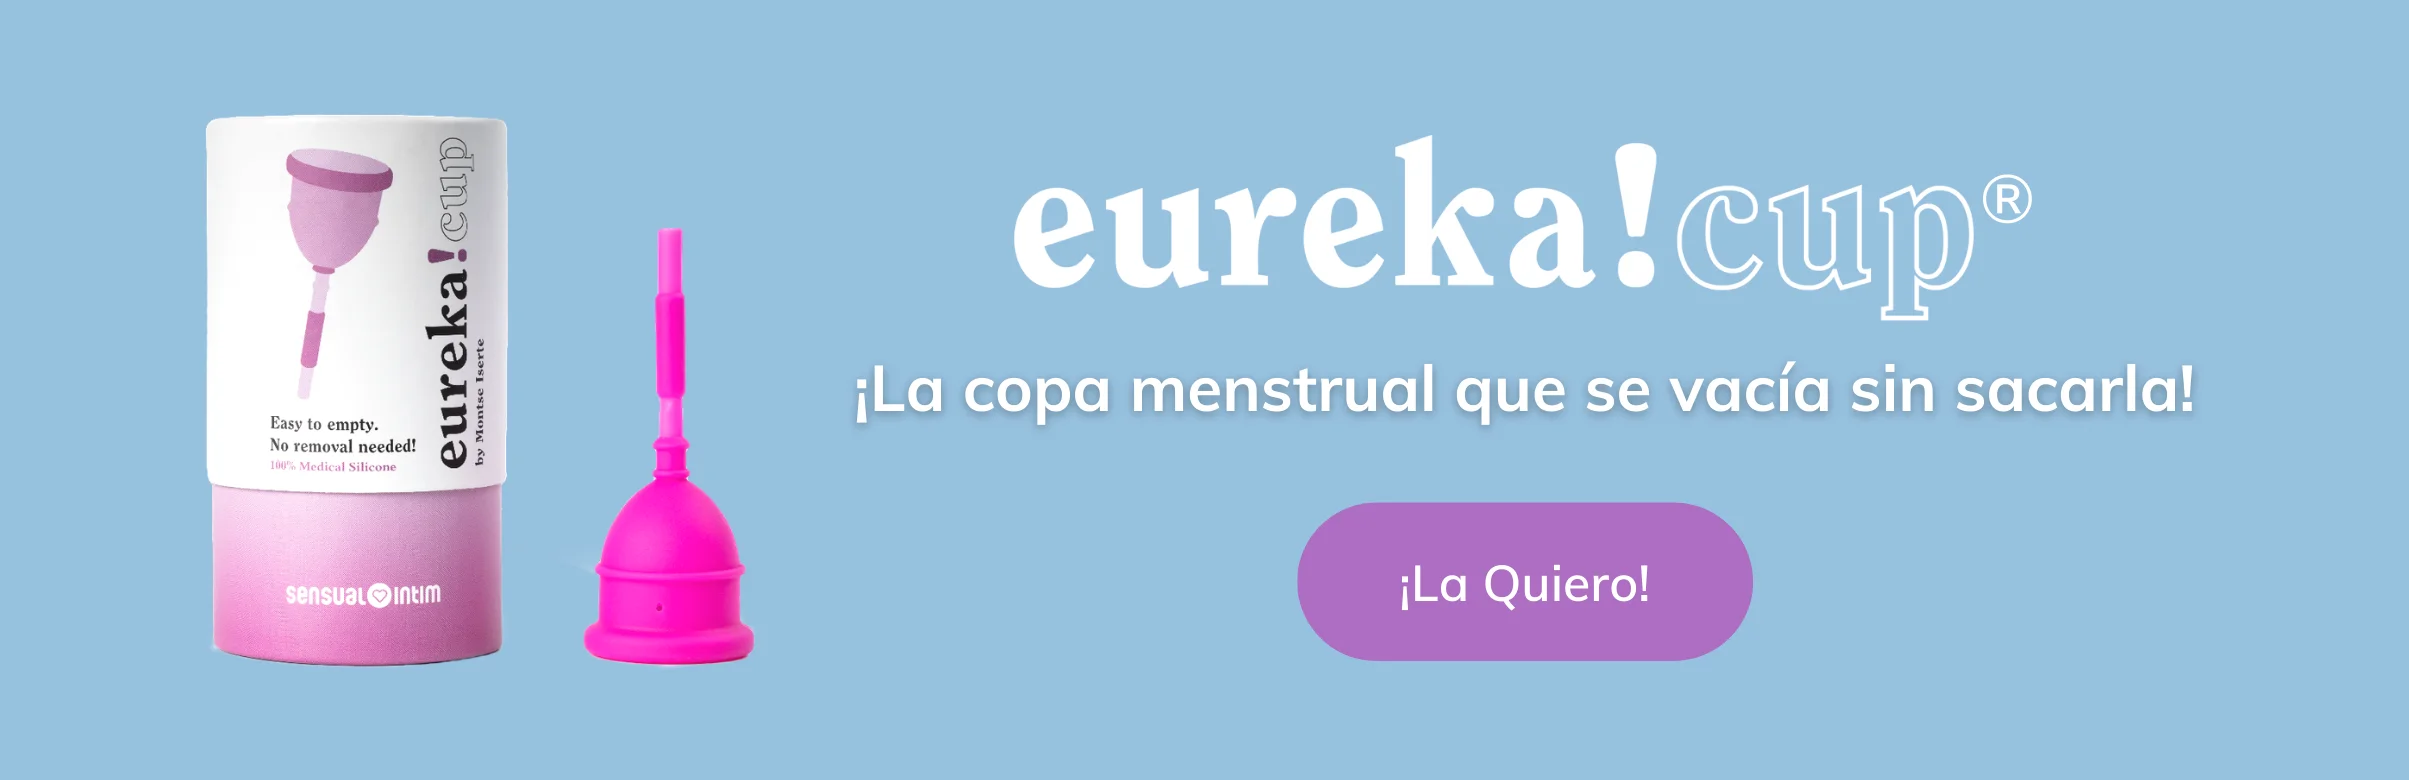 eureka cup la copa menstrual que se vacia sin sacarla | sensual intim